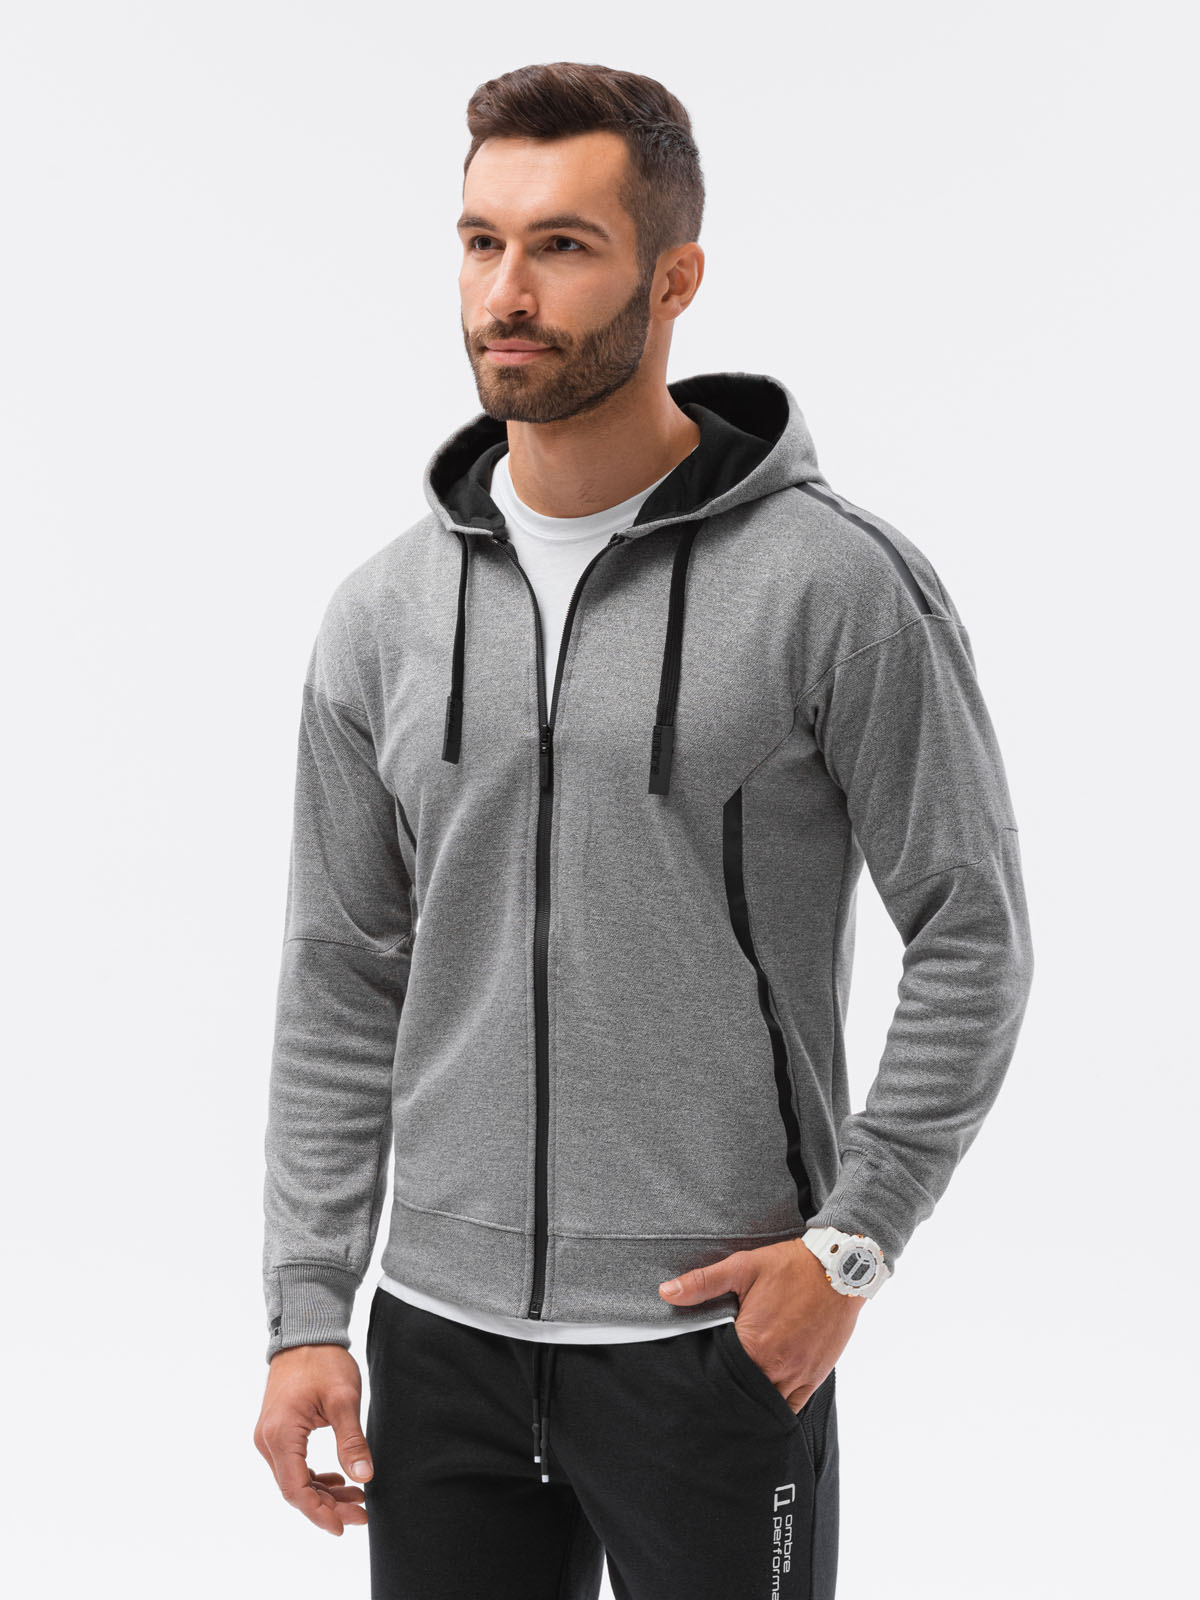 Men's zip-up sweatshirt - black melange B1205